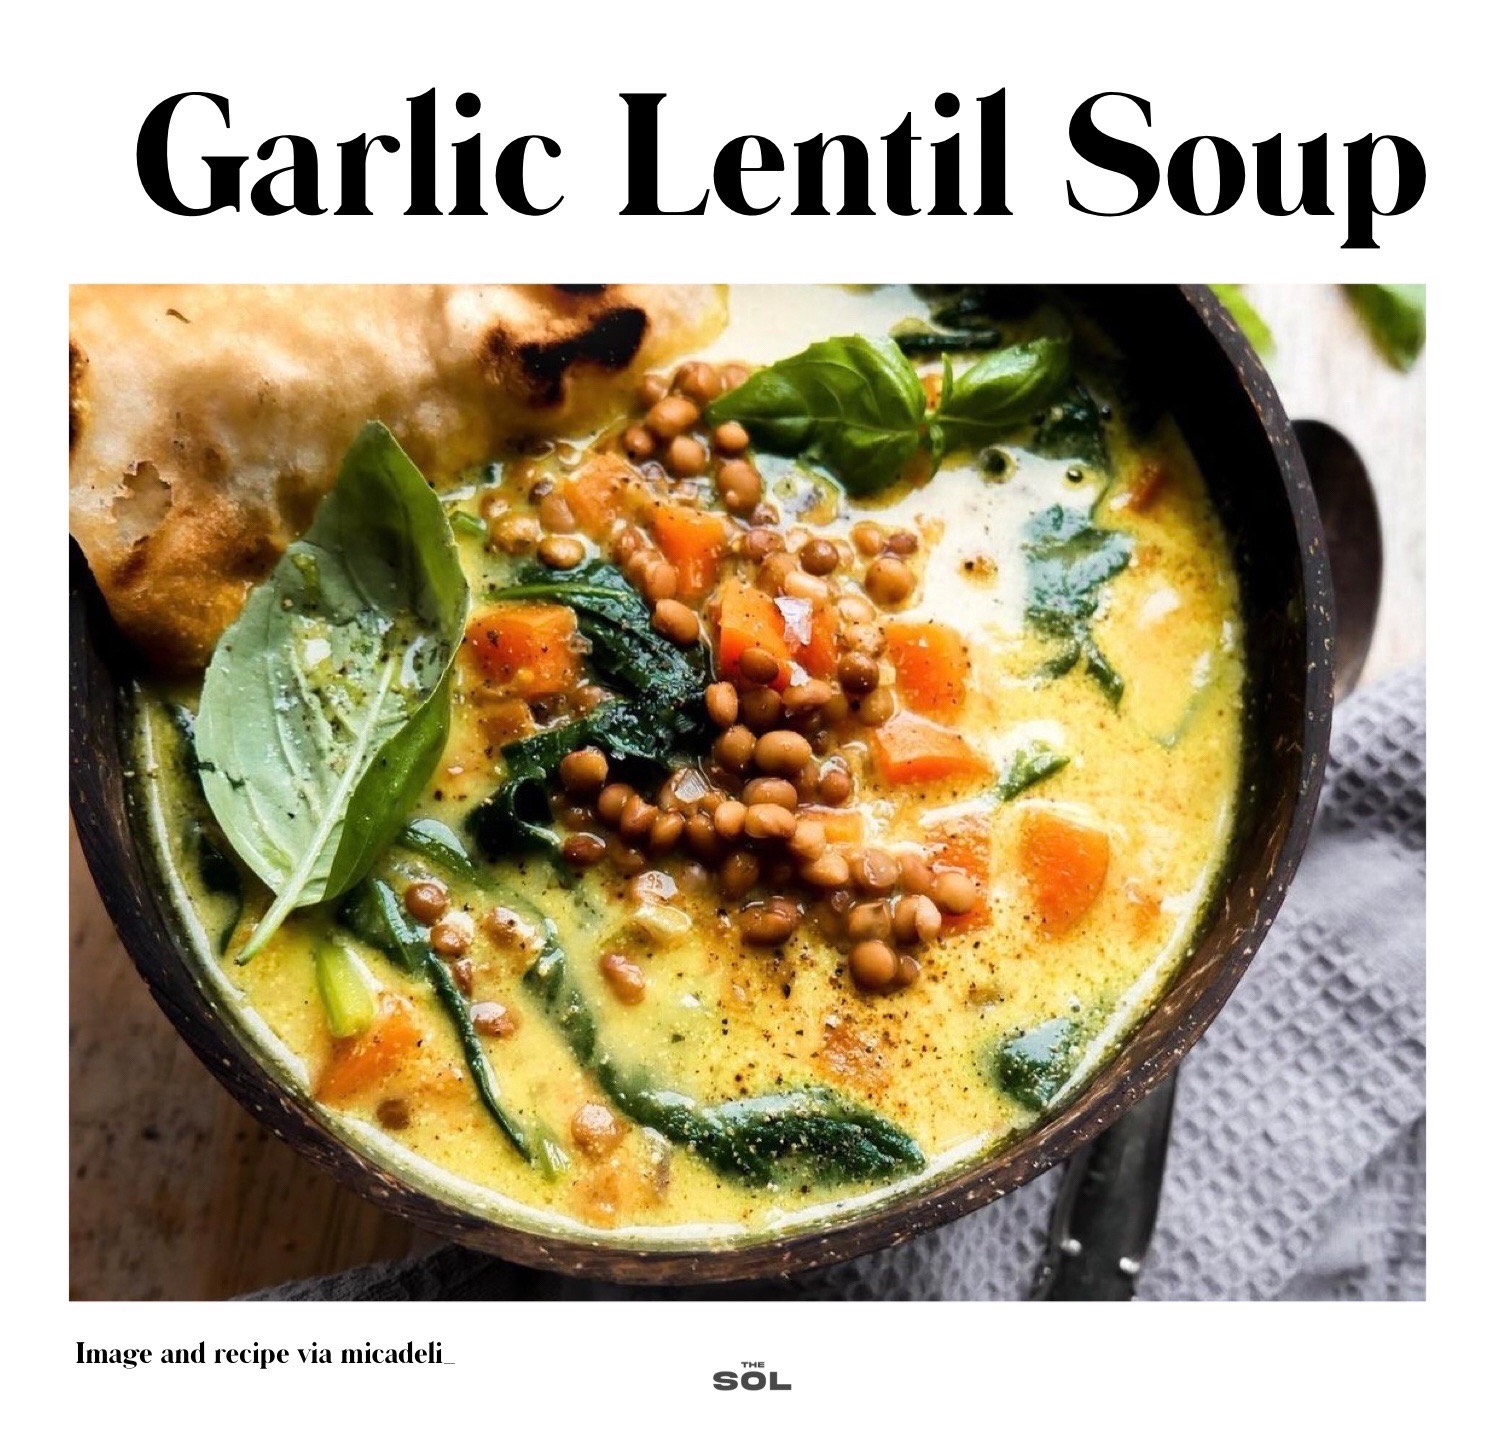 Garlic lentil soup